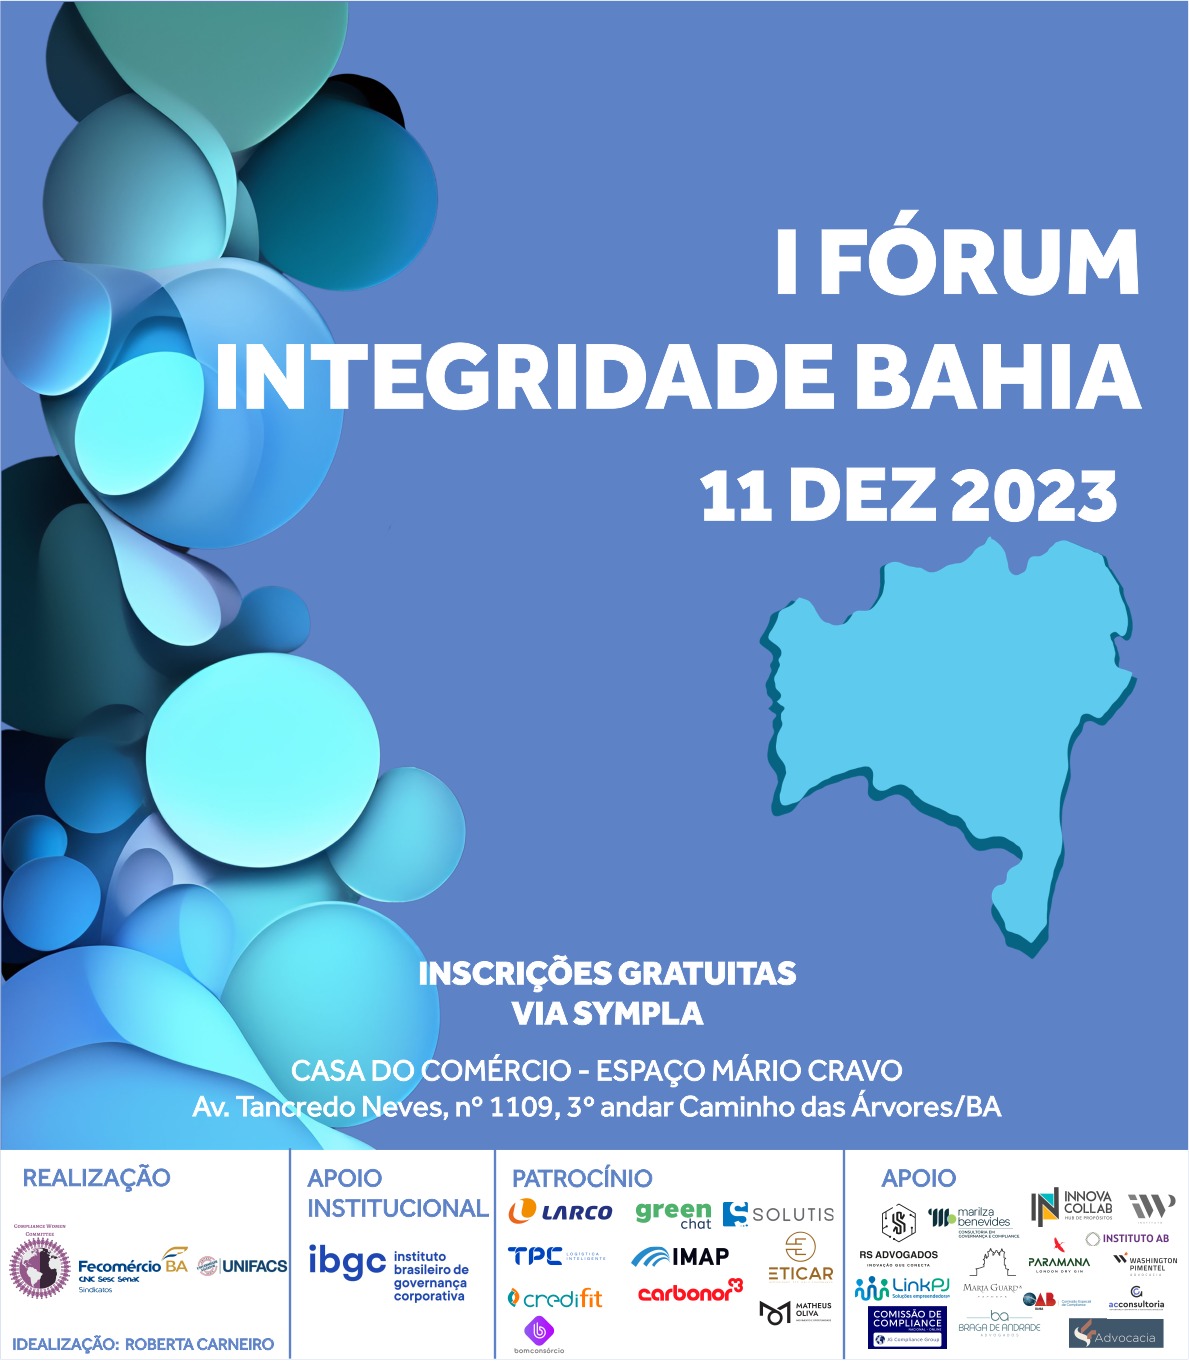 Fórum reúne líderes nacionais e internacionais na promoção do pacto pela integridade na Bahia